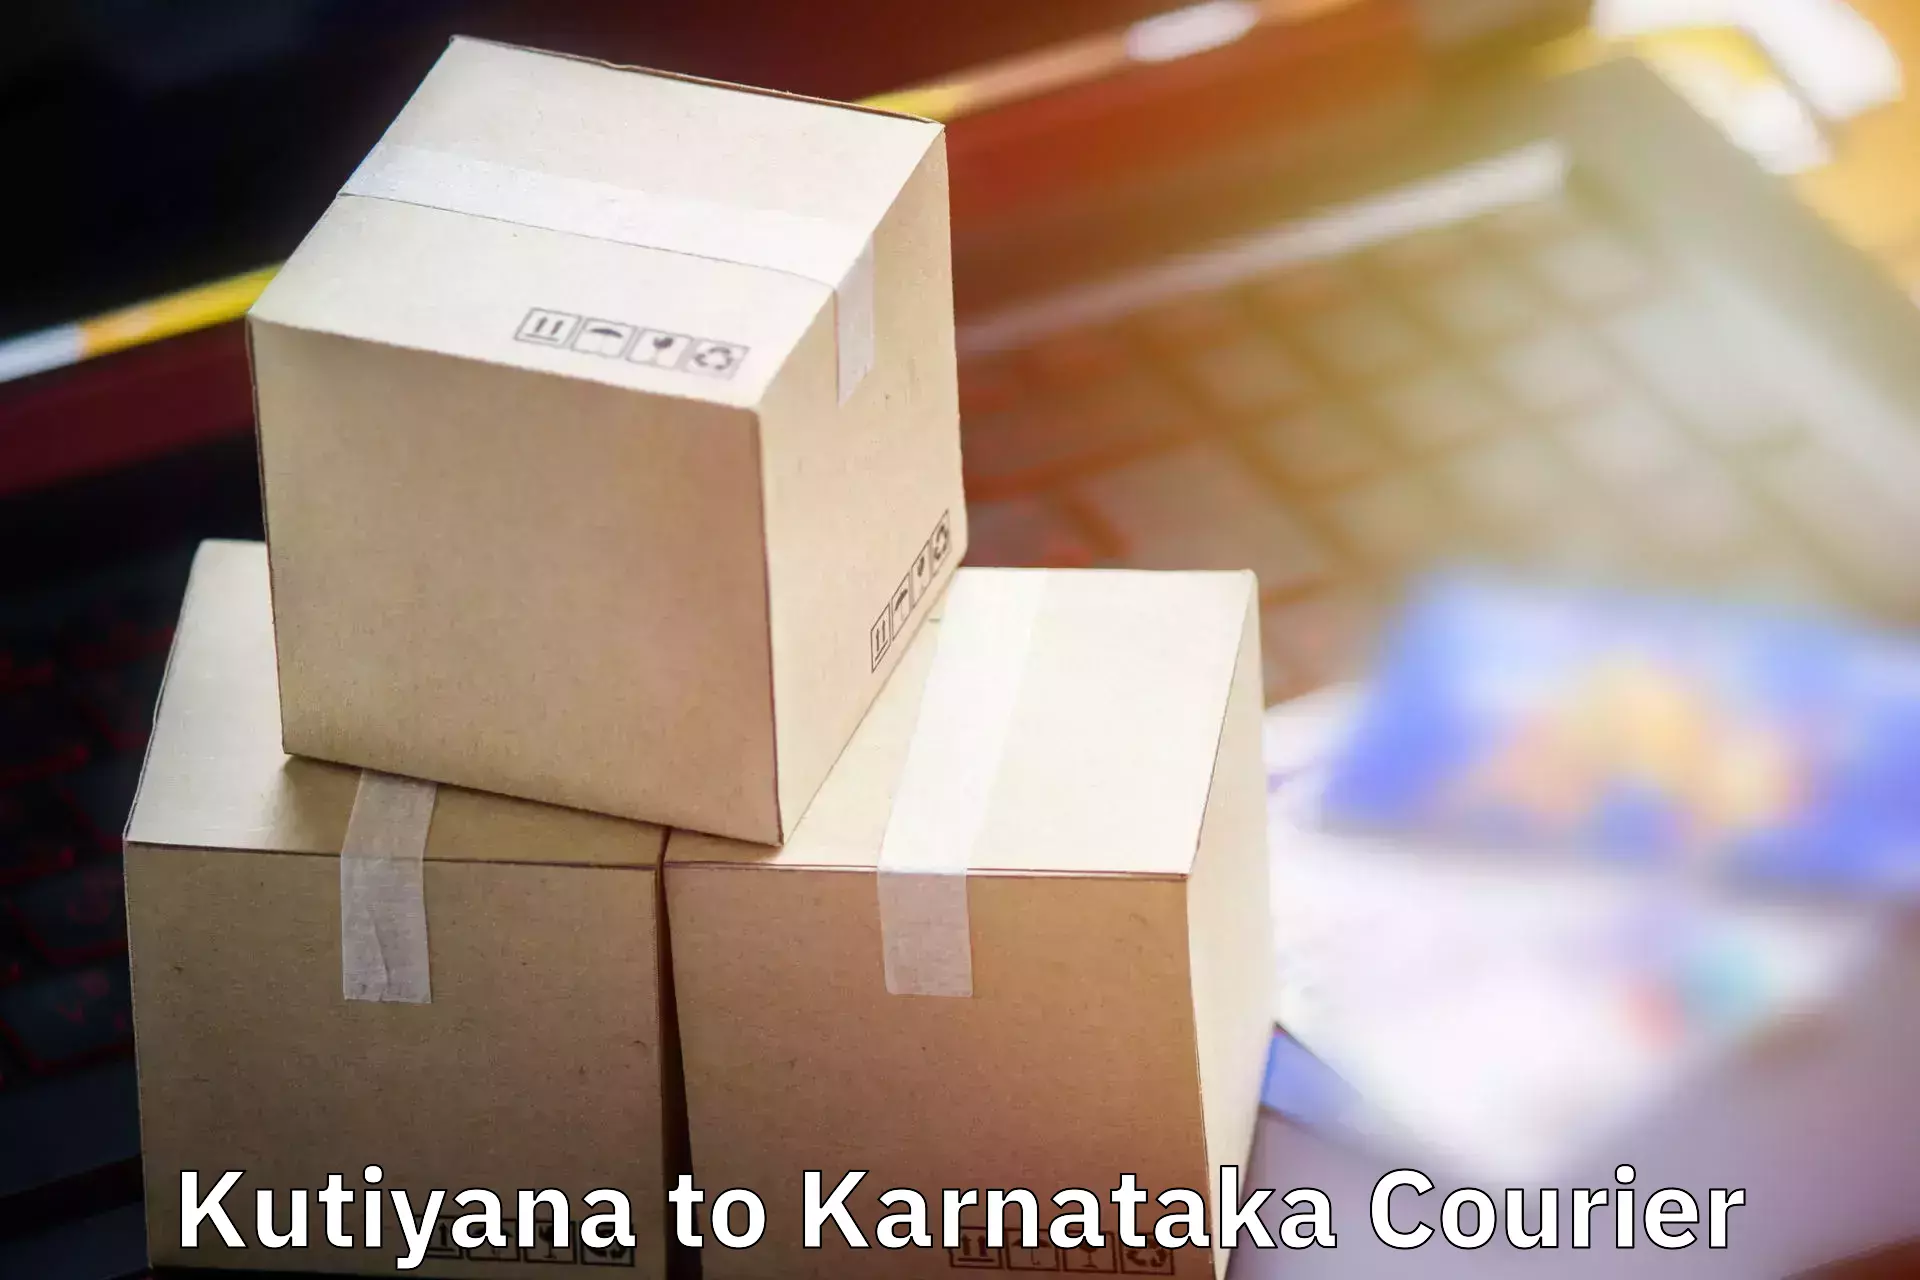 Luggage delivery system Kutiyana to Kundapura